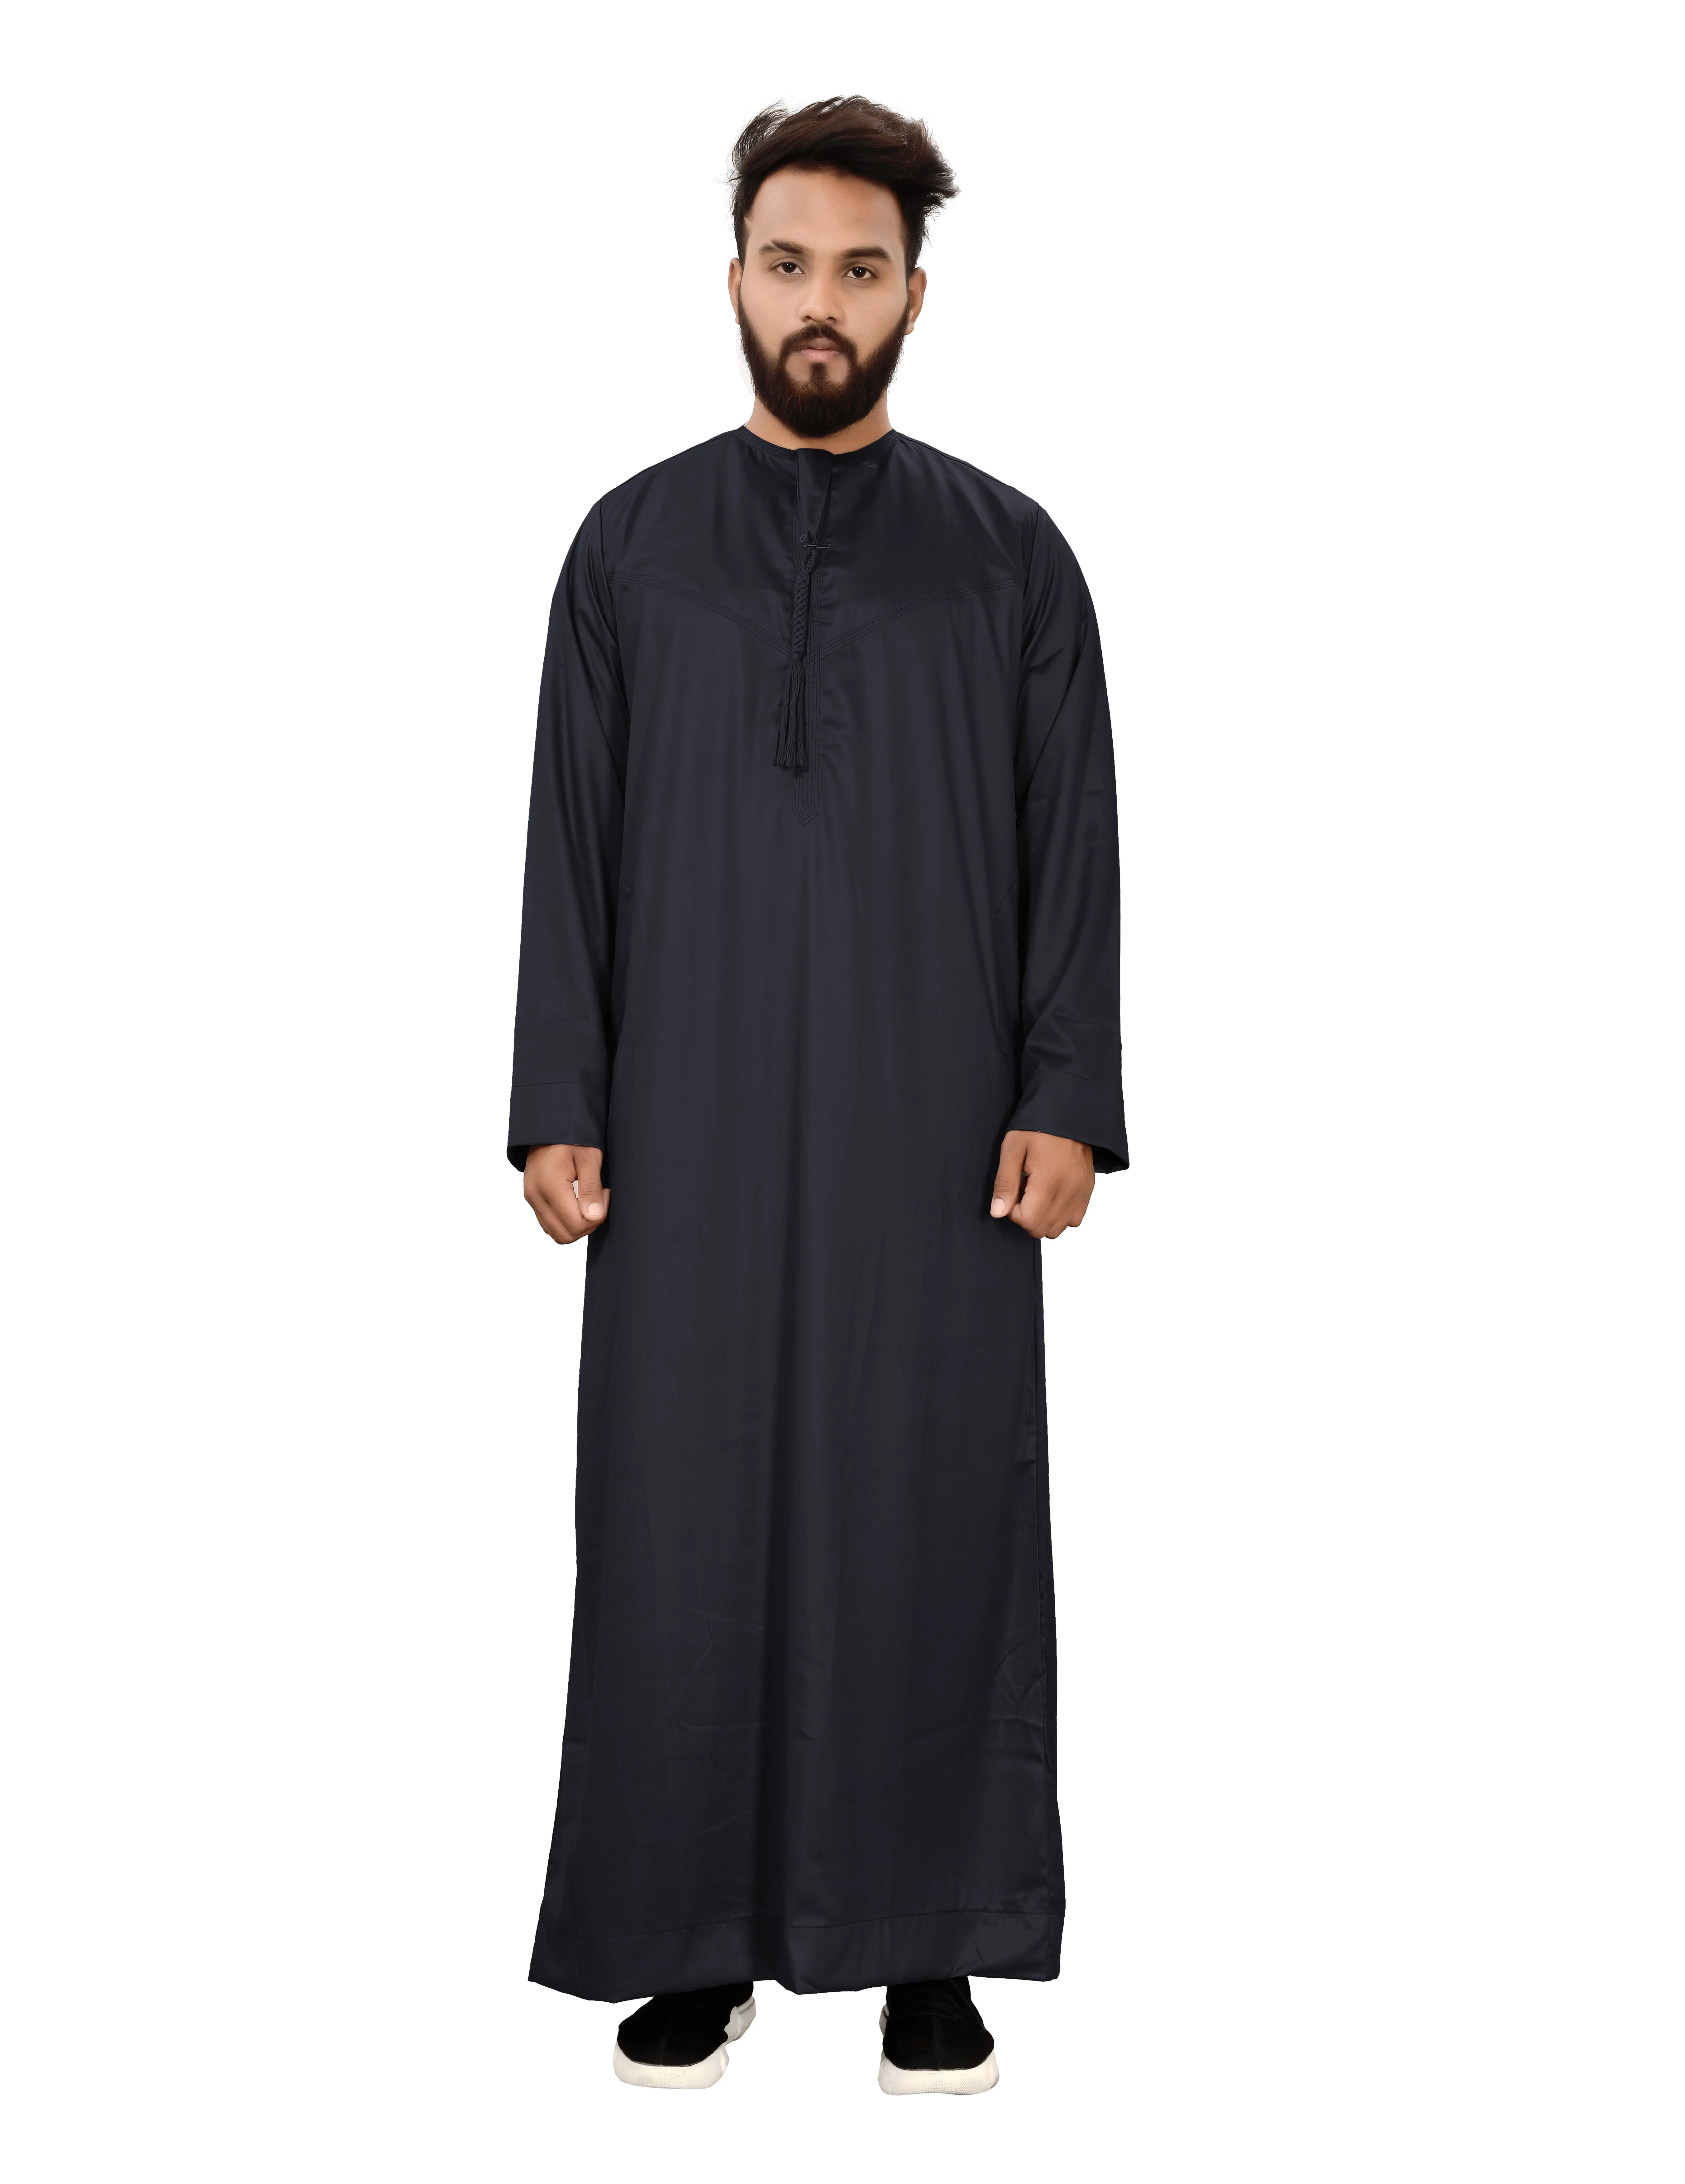 الرجال السعودية ثوب رداء الإسلامية مسلم جوبا العربية قفطان عباءة